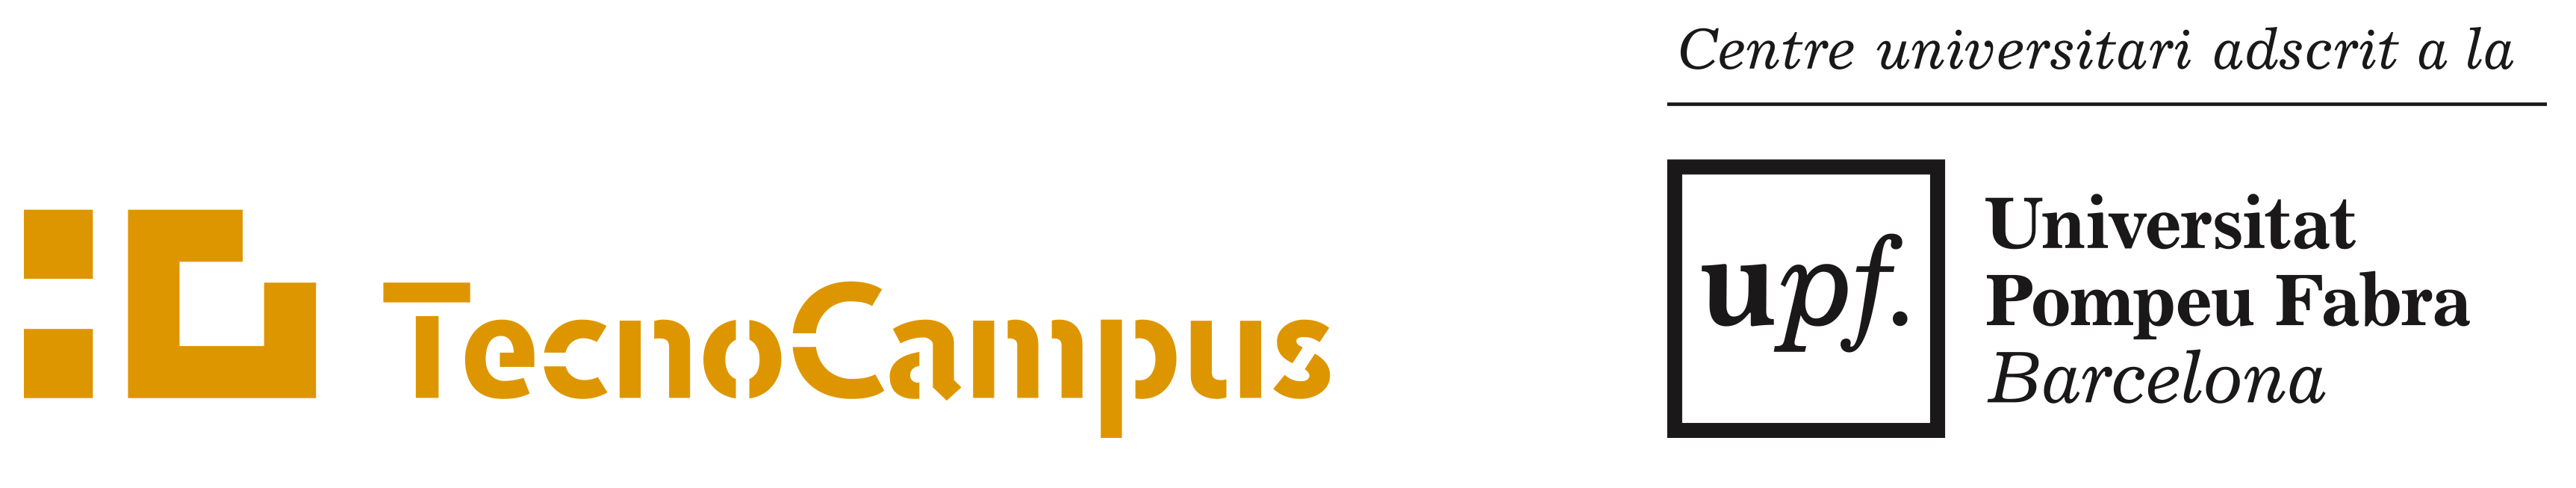 Imagen corporativa TecnoCampus | TecnoCampus | Centros adscritos a la  Universidad Pompeu Fabra y Parque empresarial